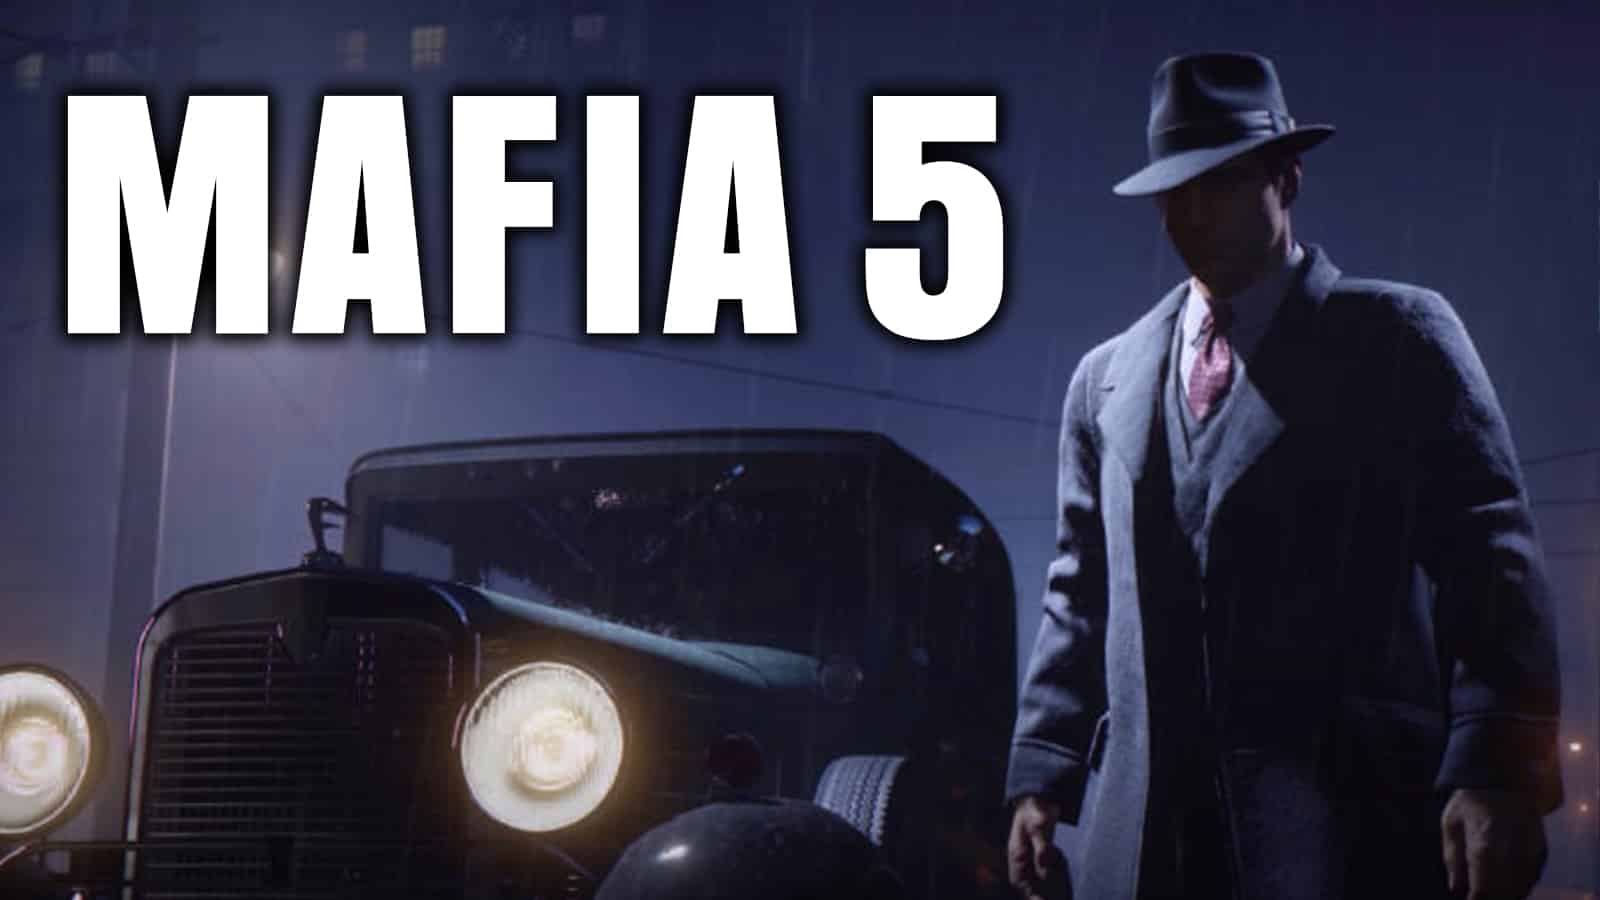 a concept image of mafia 5